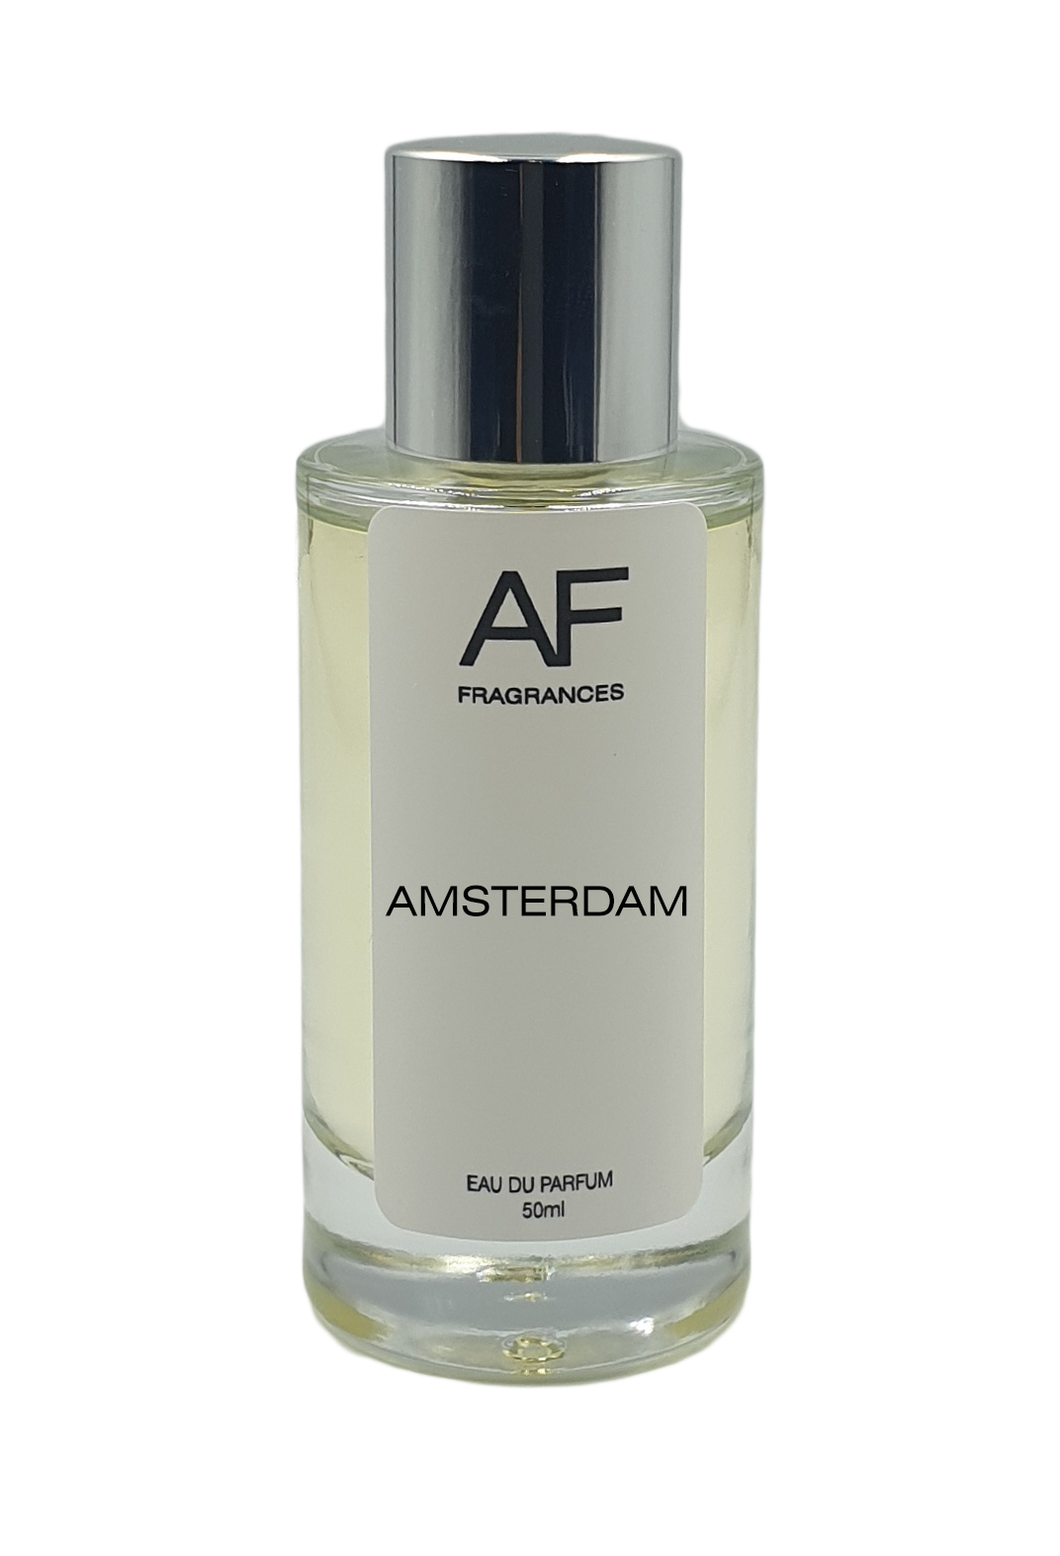 Amsterdam - AF Fragrances